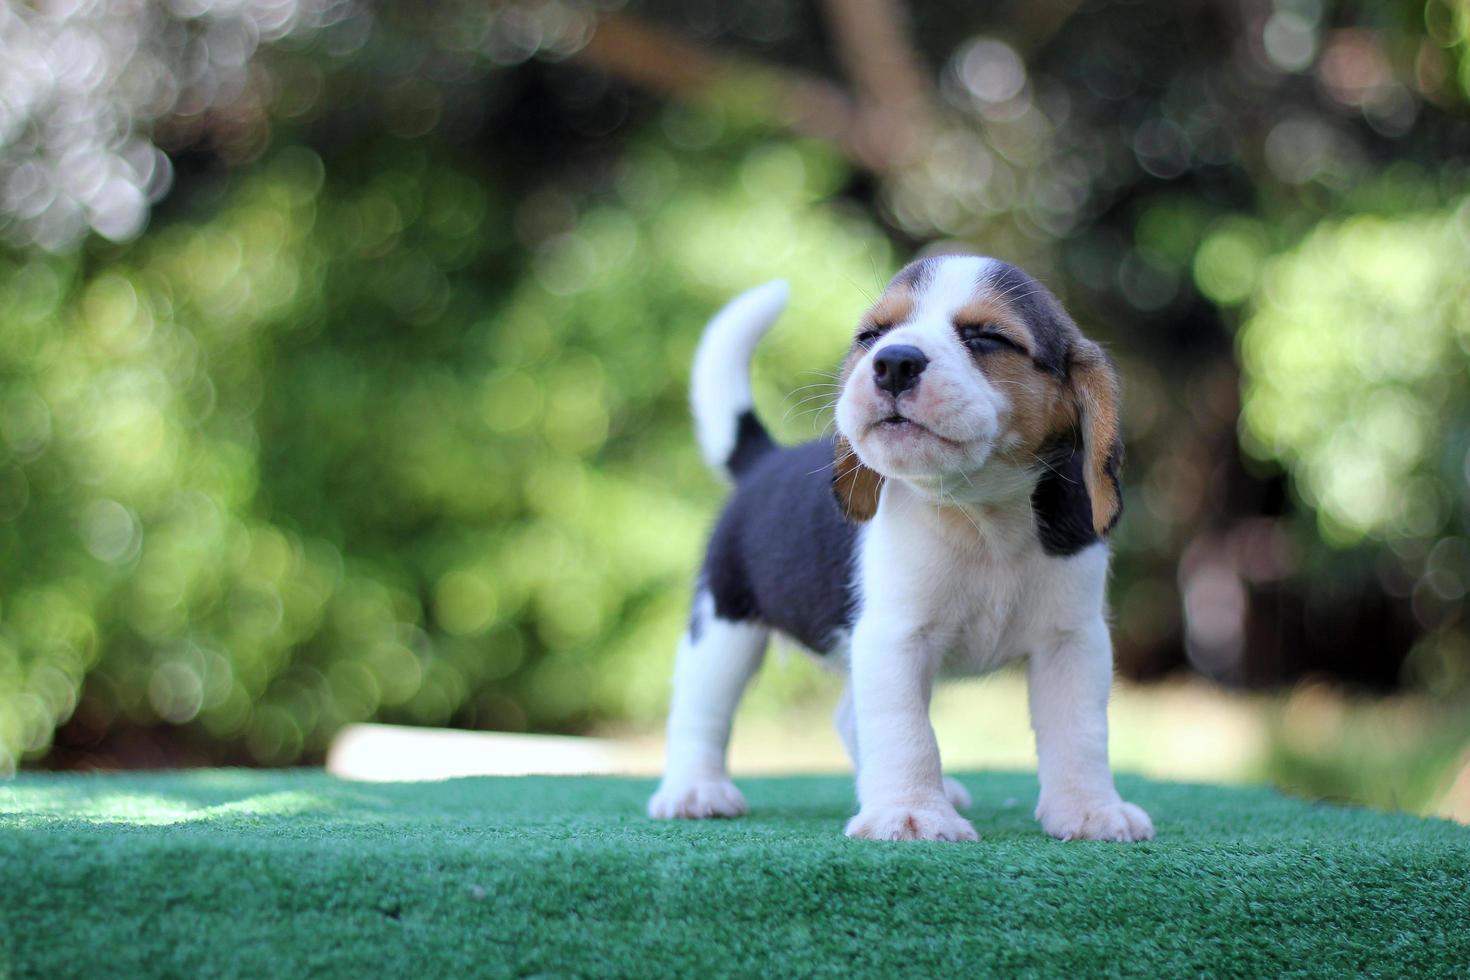 Entzückender dreifarbiger Beagle auf weißem Bildschirm. Beagles werden in einer Reihe von Forschungsverfahren eingesetzt. Das allgemeine Erscheinungsbild des Beagle ähnelt einem Miniatur-Fuchshund. Beagles haben ausgezeichnete Nasen. foto